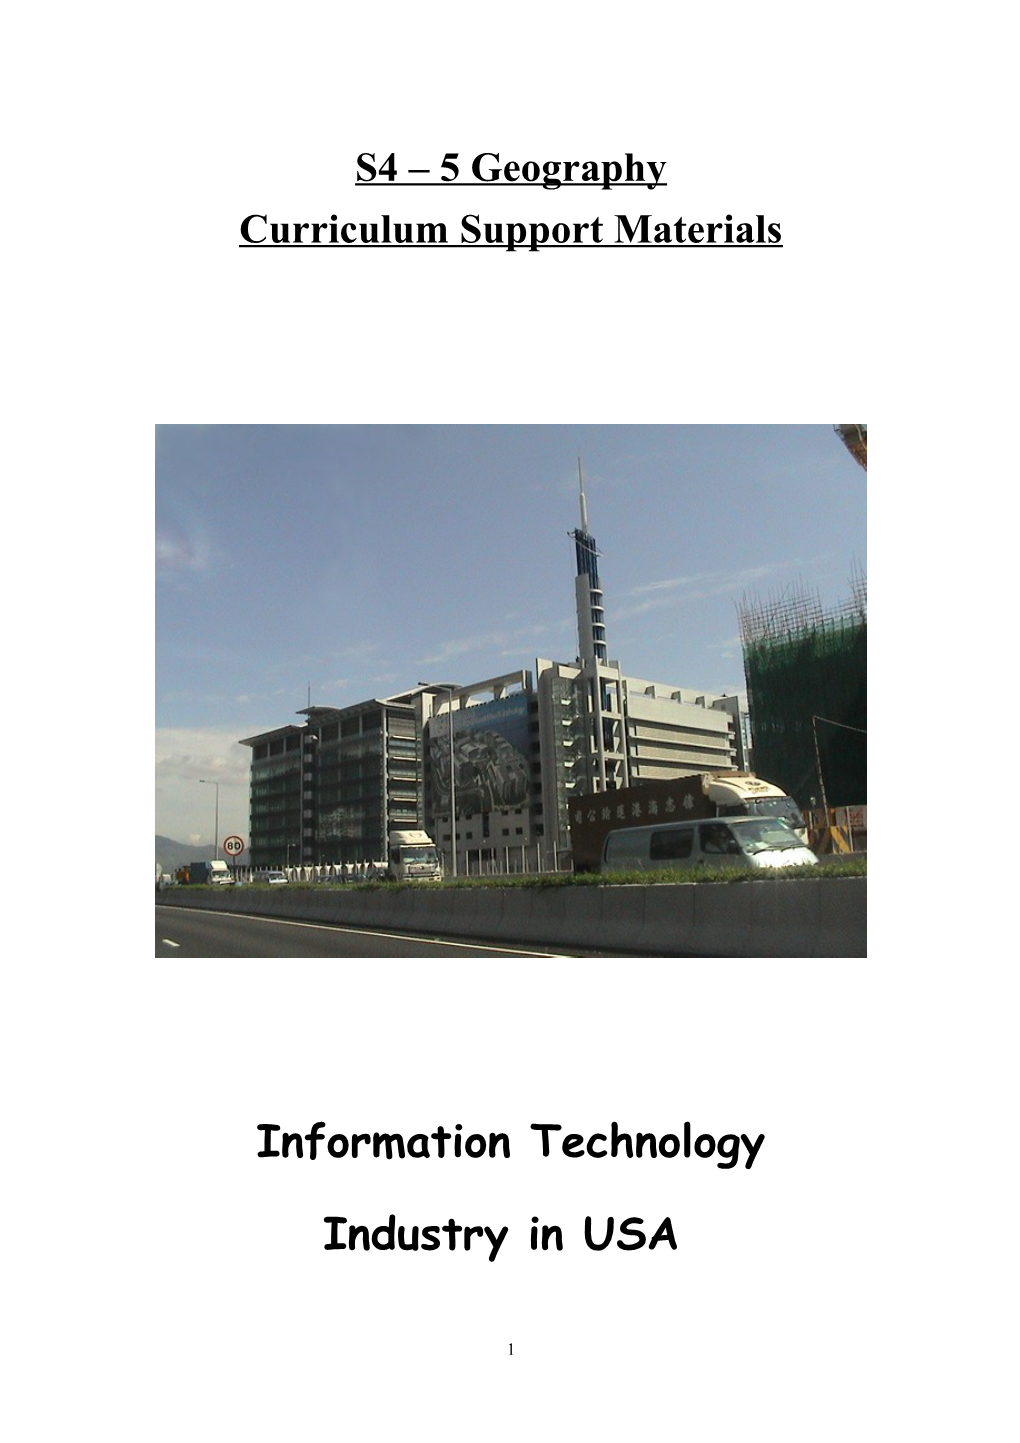 Curriculum Support Materials